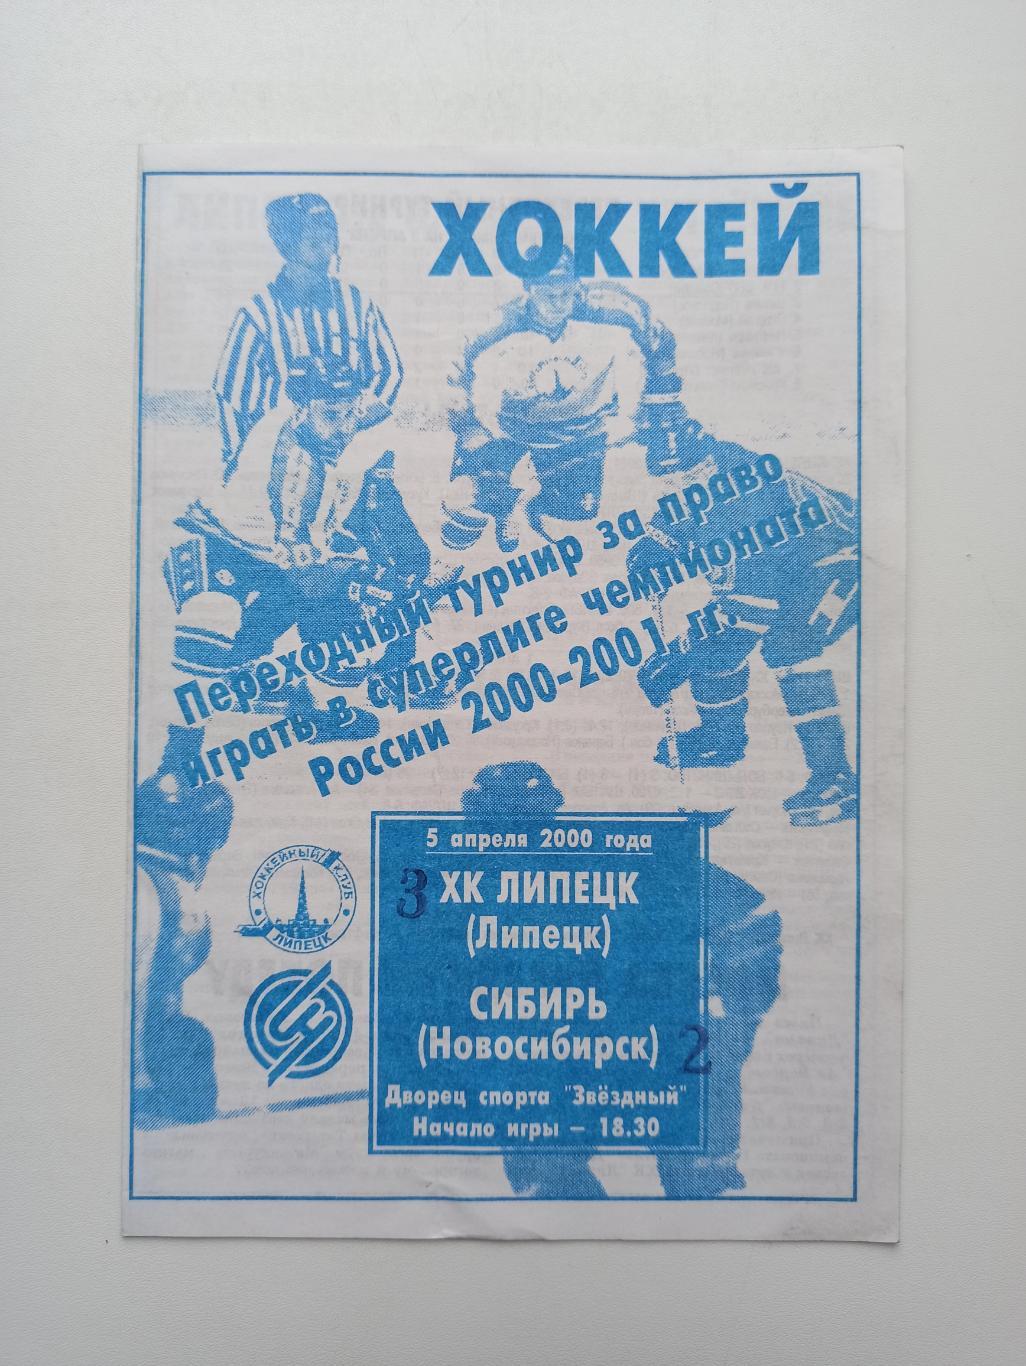 Раритет, Хоккей, переходный турнир, ХК Липецк - Сибирь (Новосибирск), 2000г.